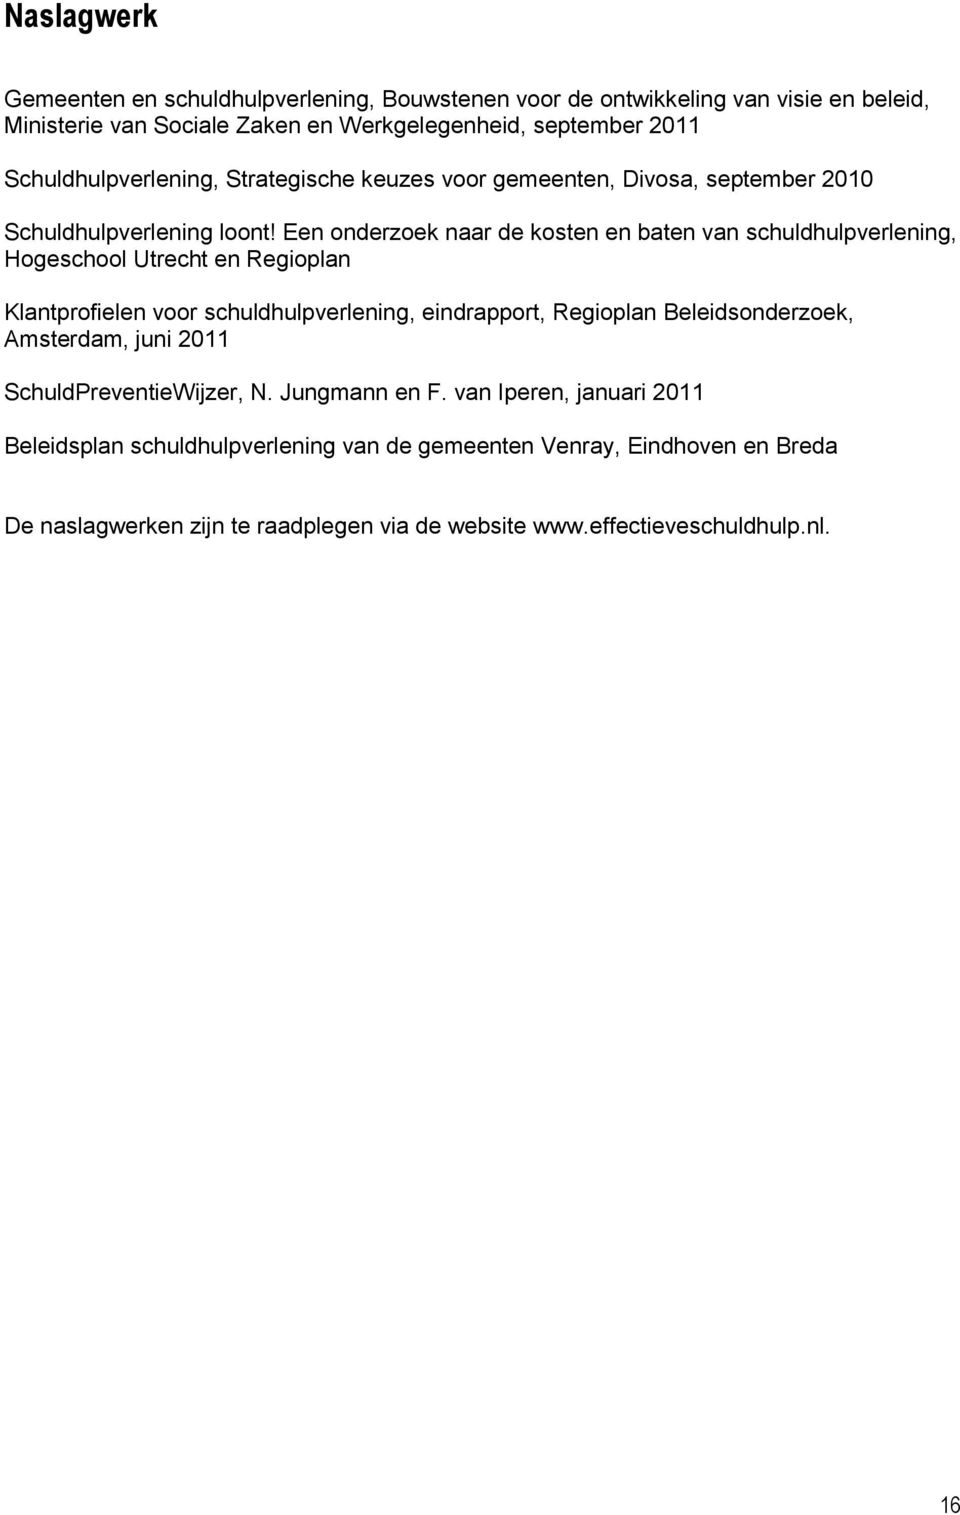 Een onderzoek naar de kosten en baten van schuldhulpverlening, Hogeschool Utrecht en Regioplan Klantprofielen voor schuldhulpverlening, eindrapport, Regioplan